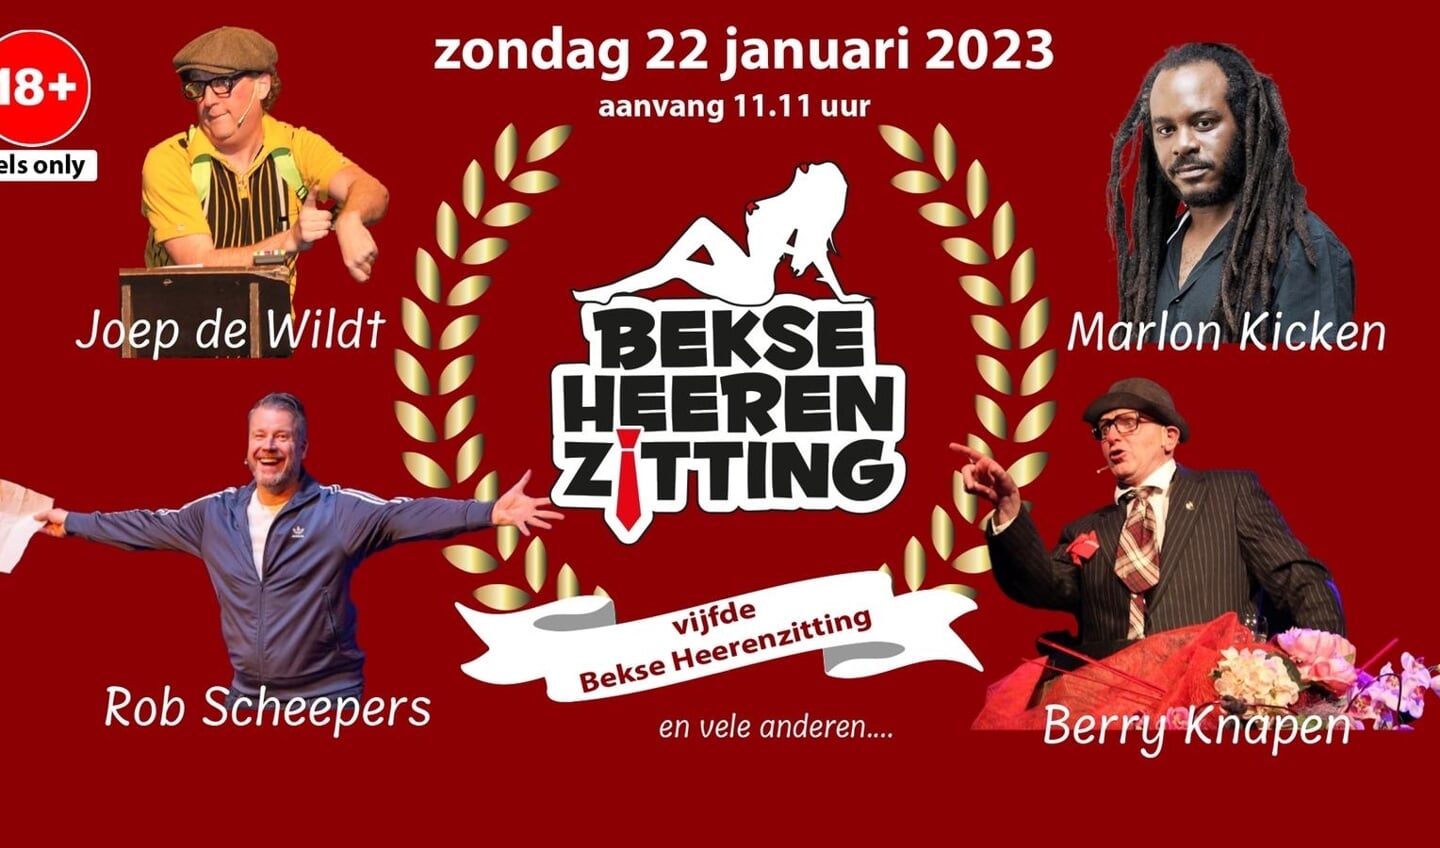 De vijfde Bèkse Heerenzitting vindt plaats op zondag 22 januari 2023.